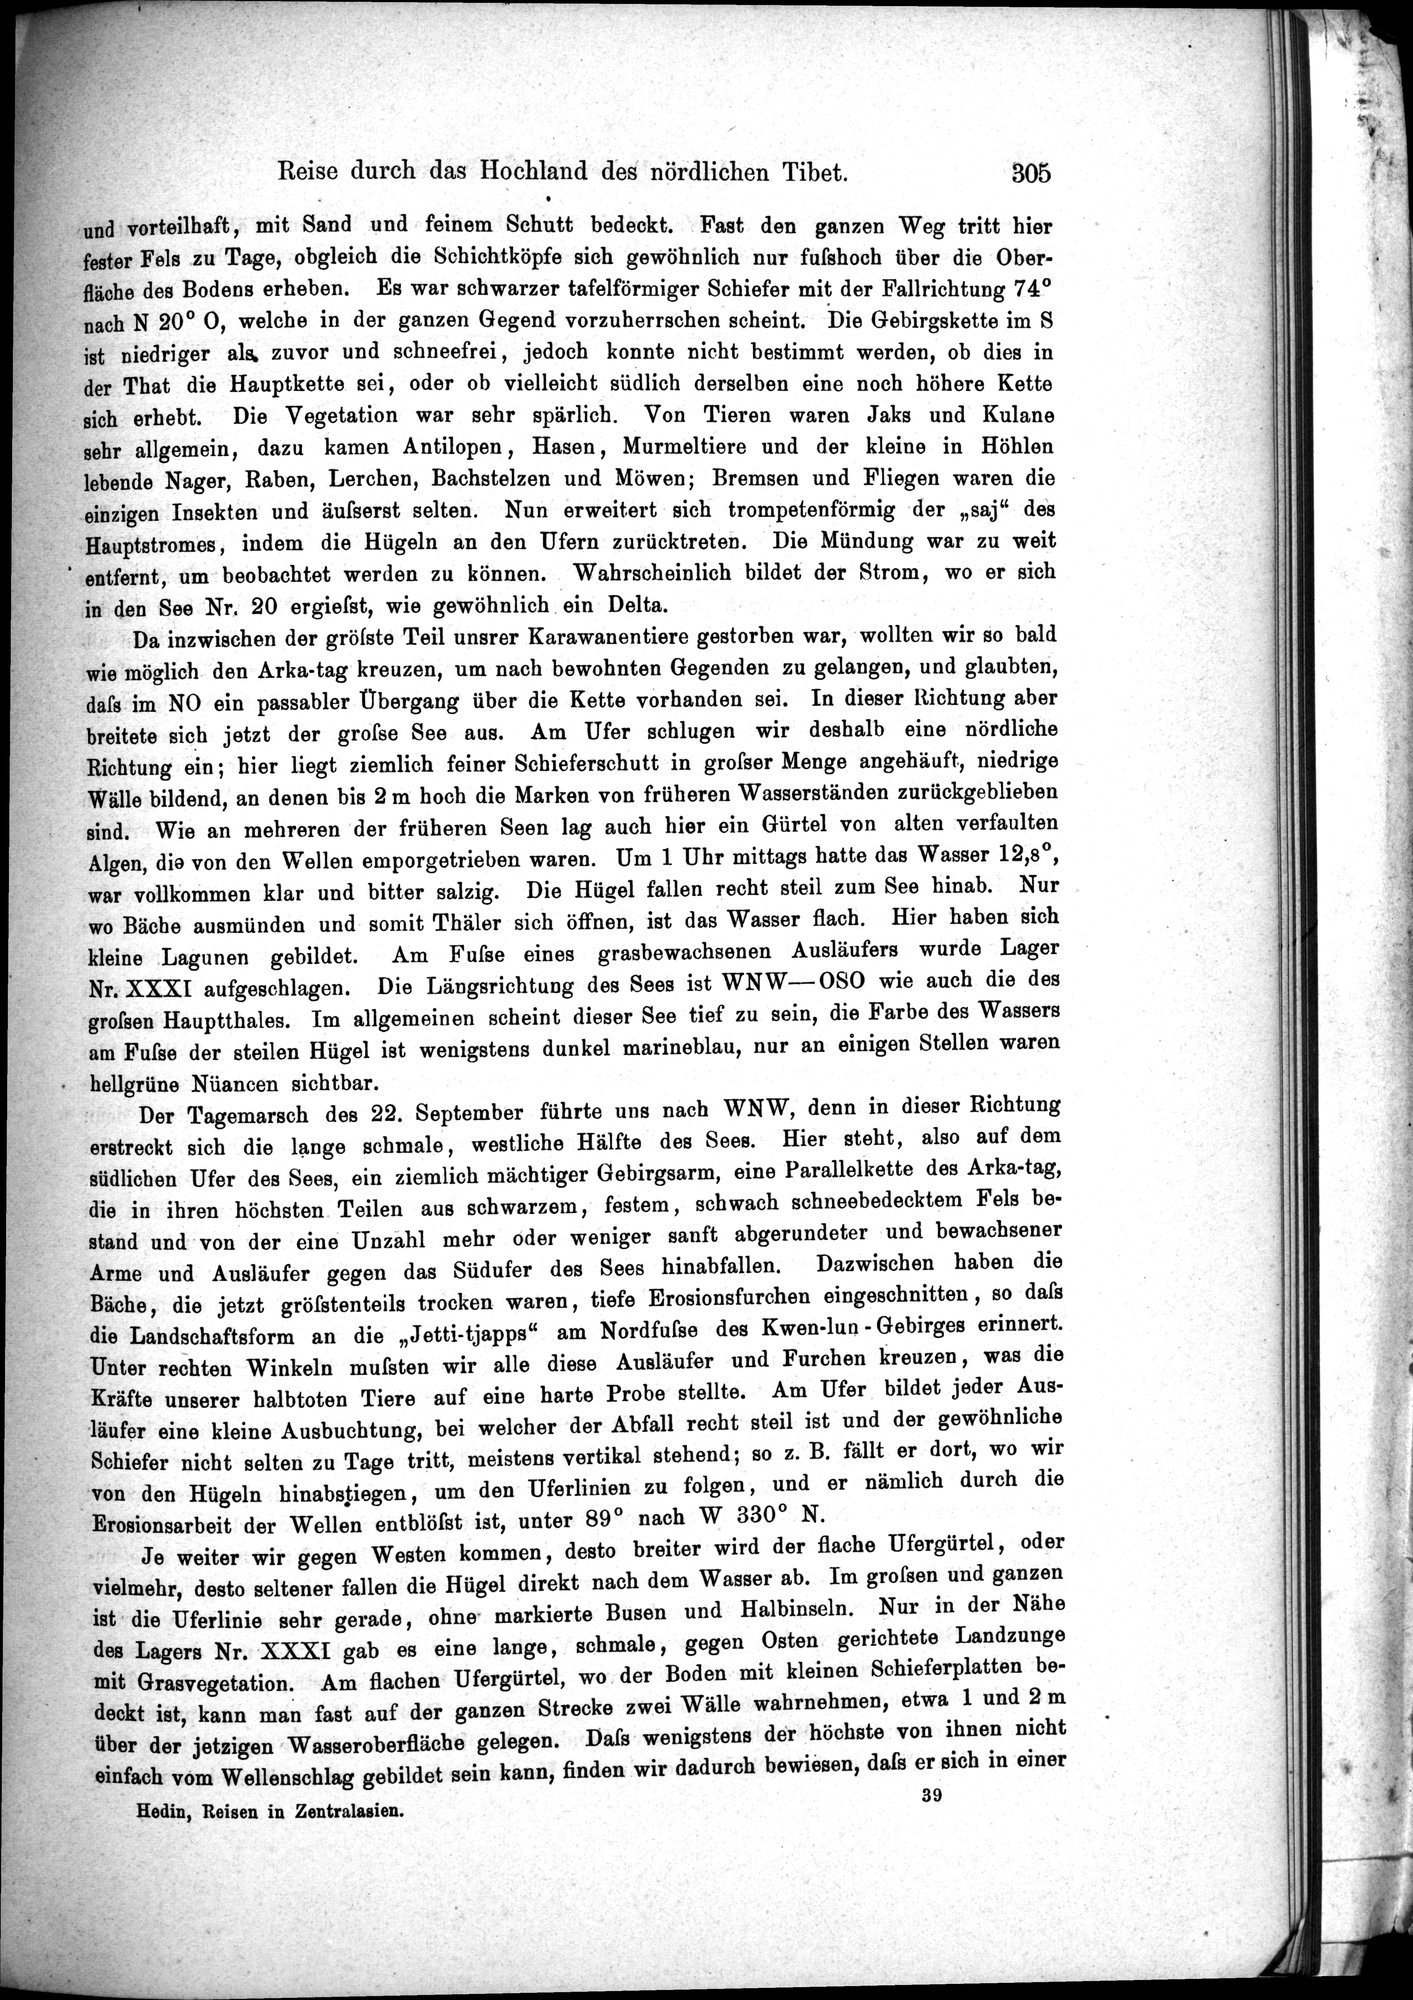 Die Geographische-Wissenschaftlichen Ergebnisse meiner Reisen in Zentralasien, 1894-1897 : vol.1 / Page 317 (Grayscale High Resolution Image)